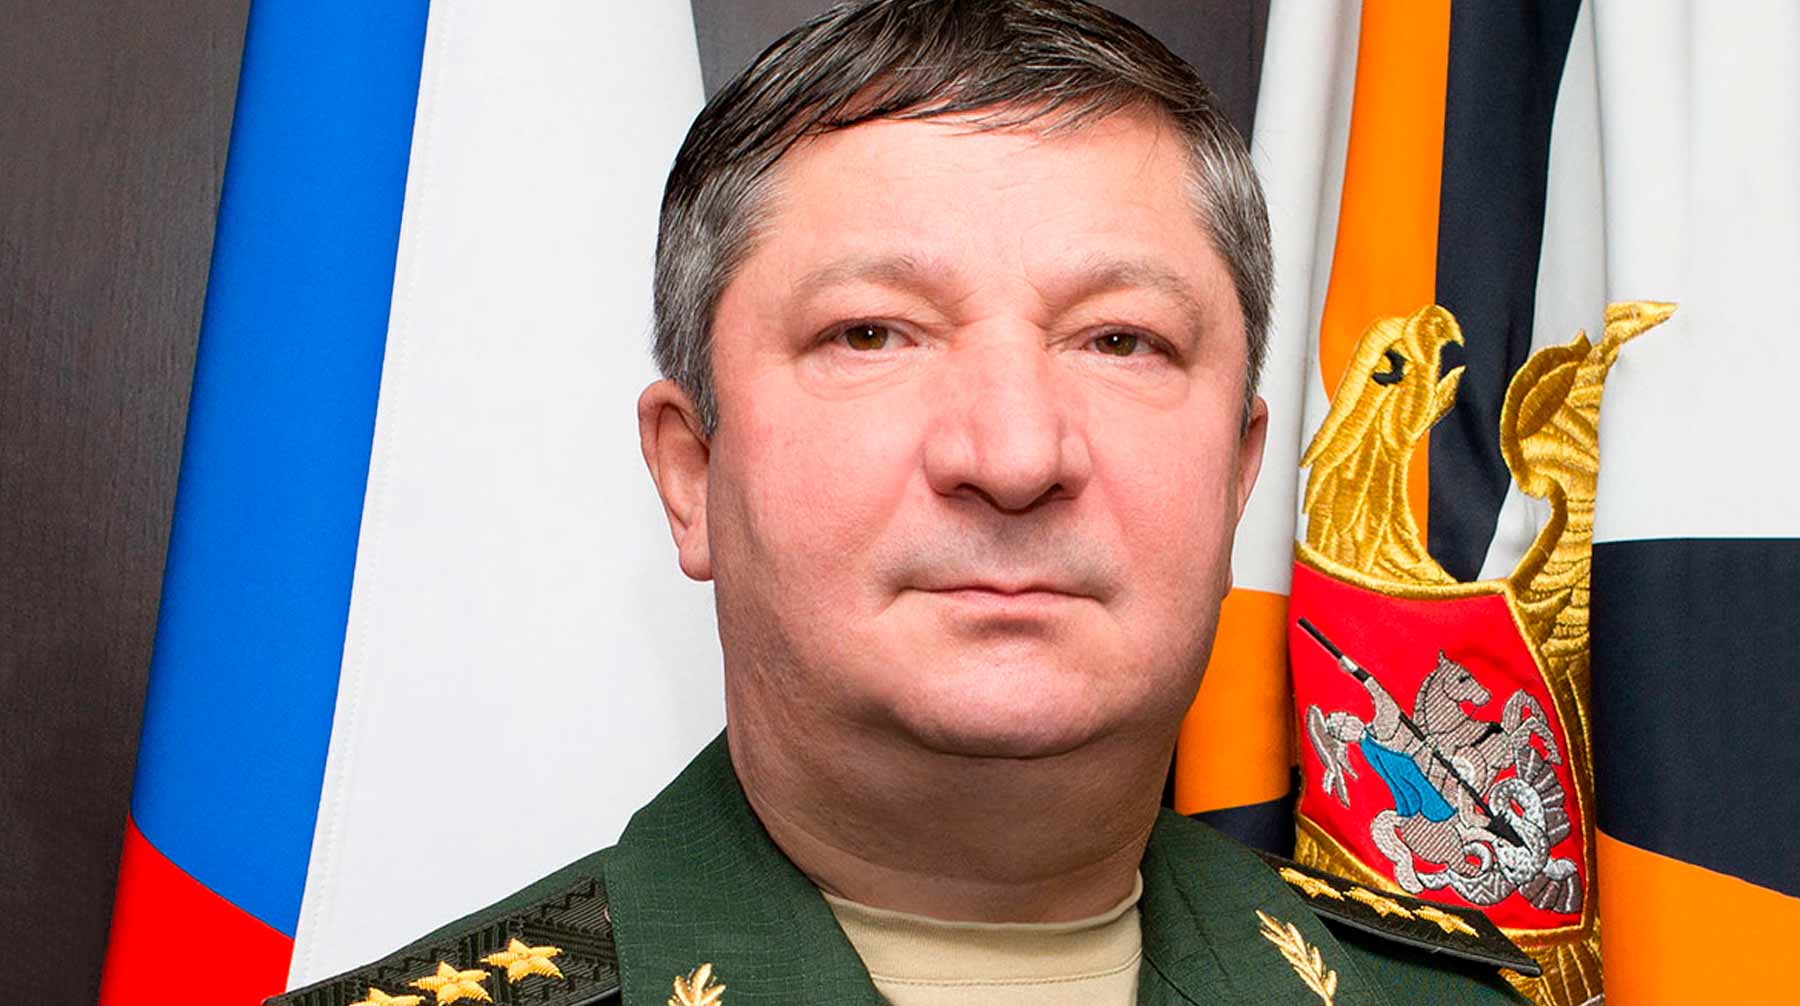 Ранее генерал-полковник находился под подпиской о невыезде Халил Арсланов